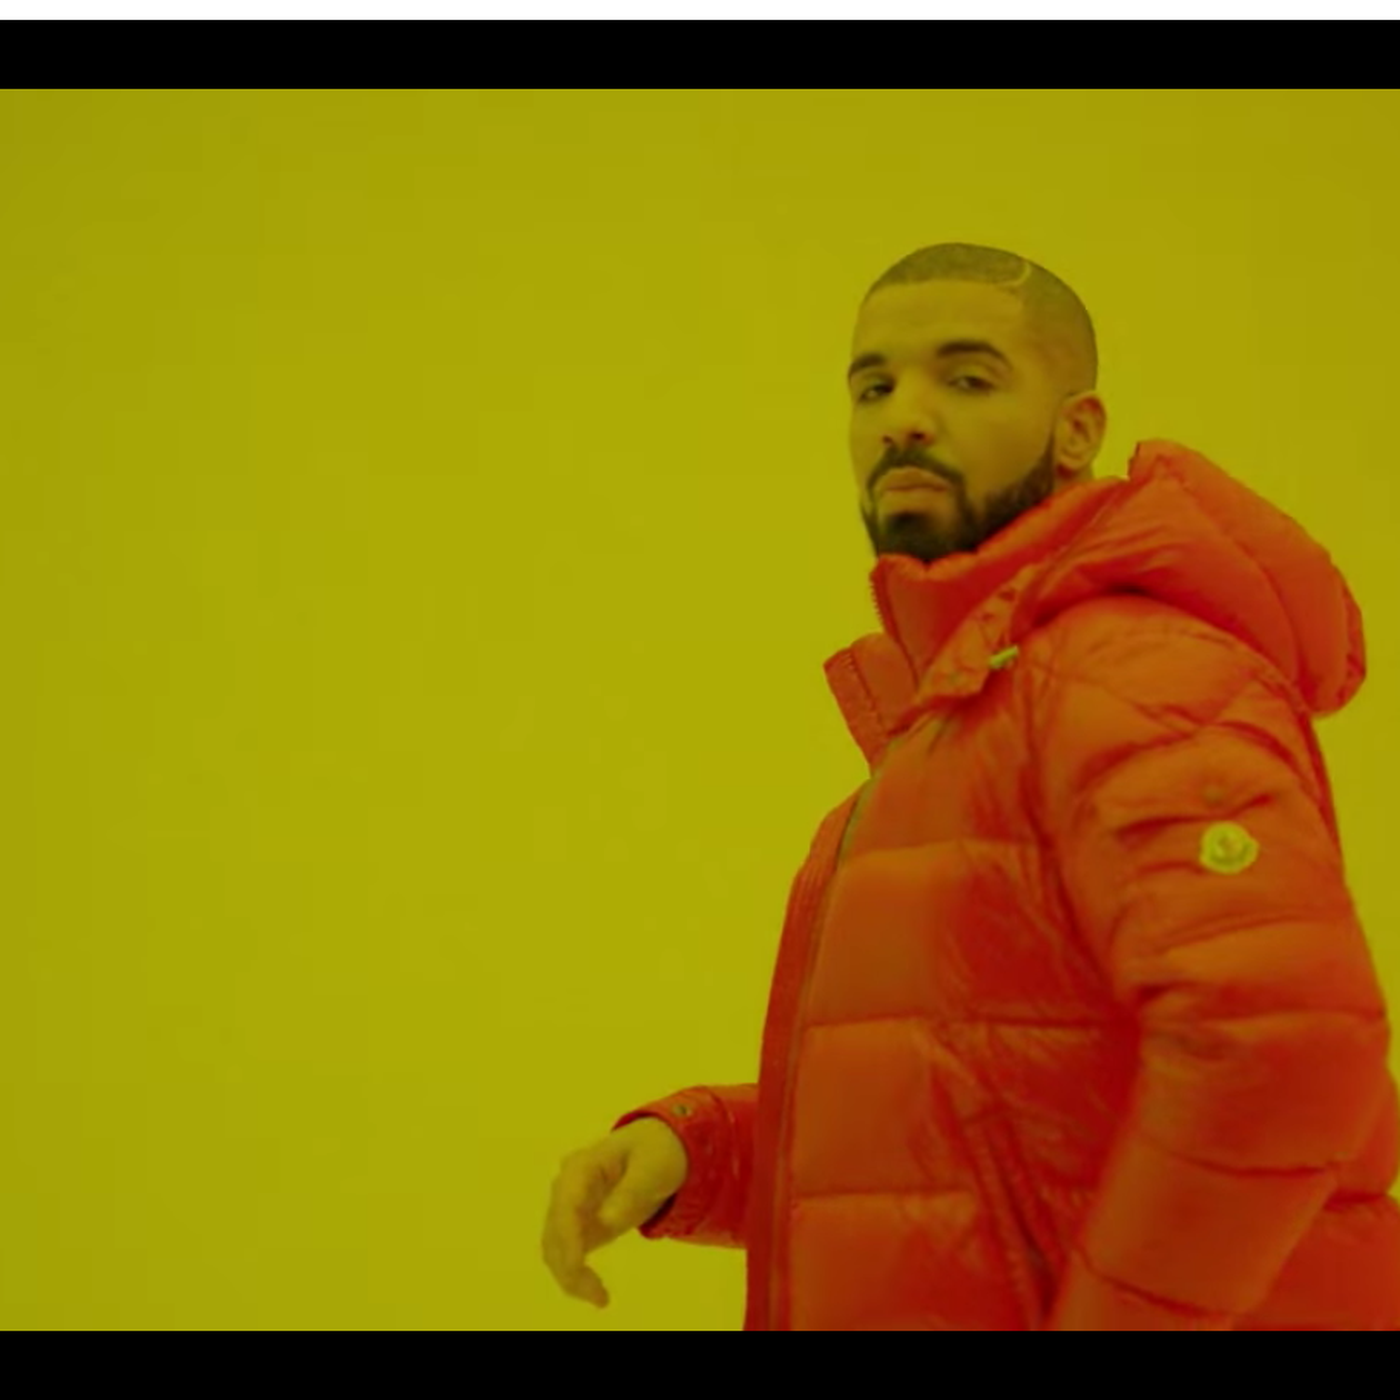 Drakes Hotline Bling Memes Bring Hip Hop And Gaming Fans Together